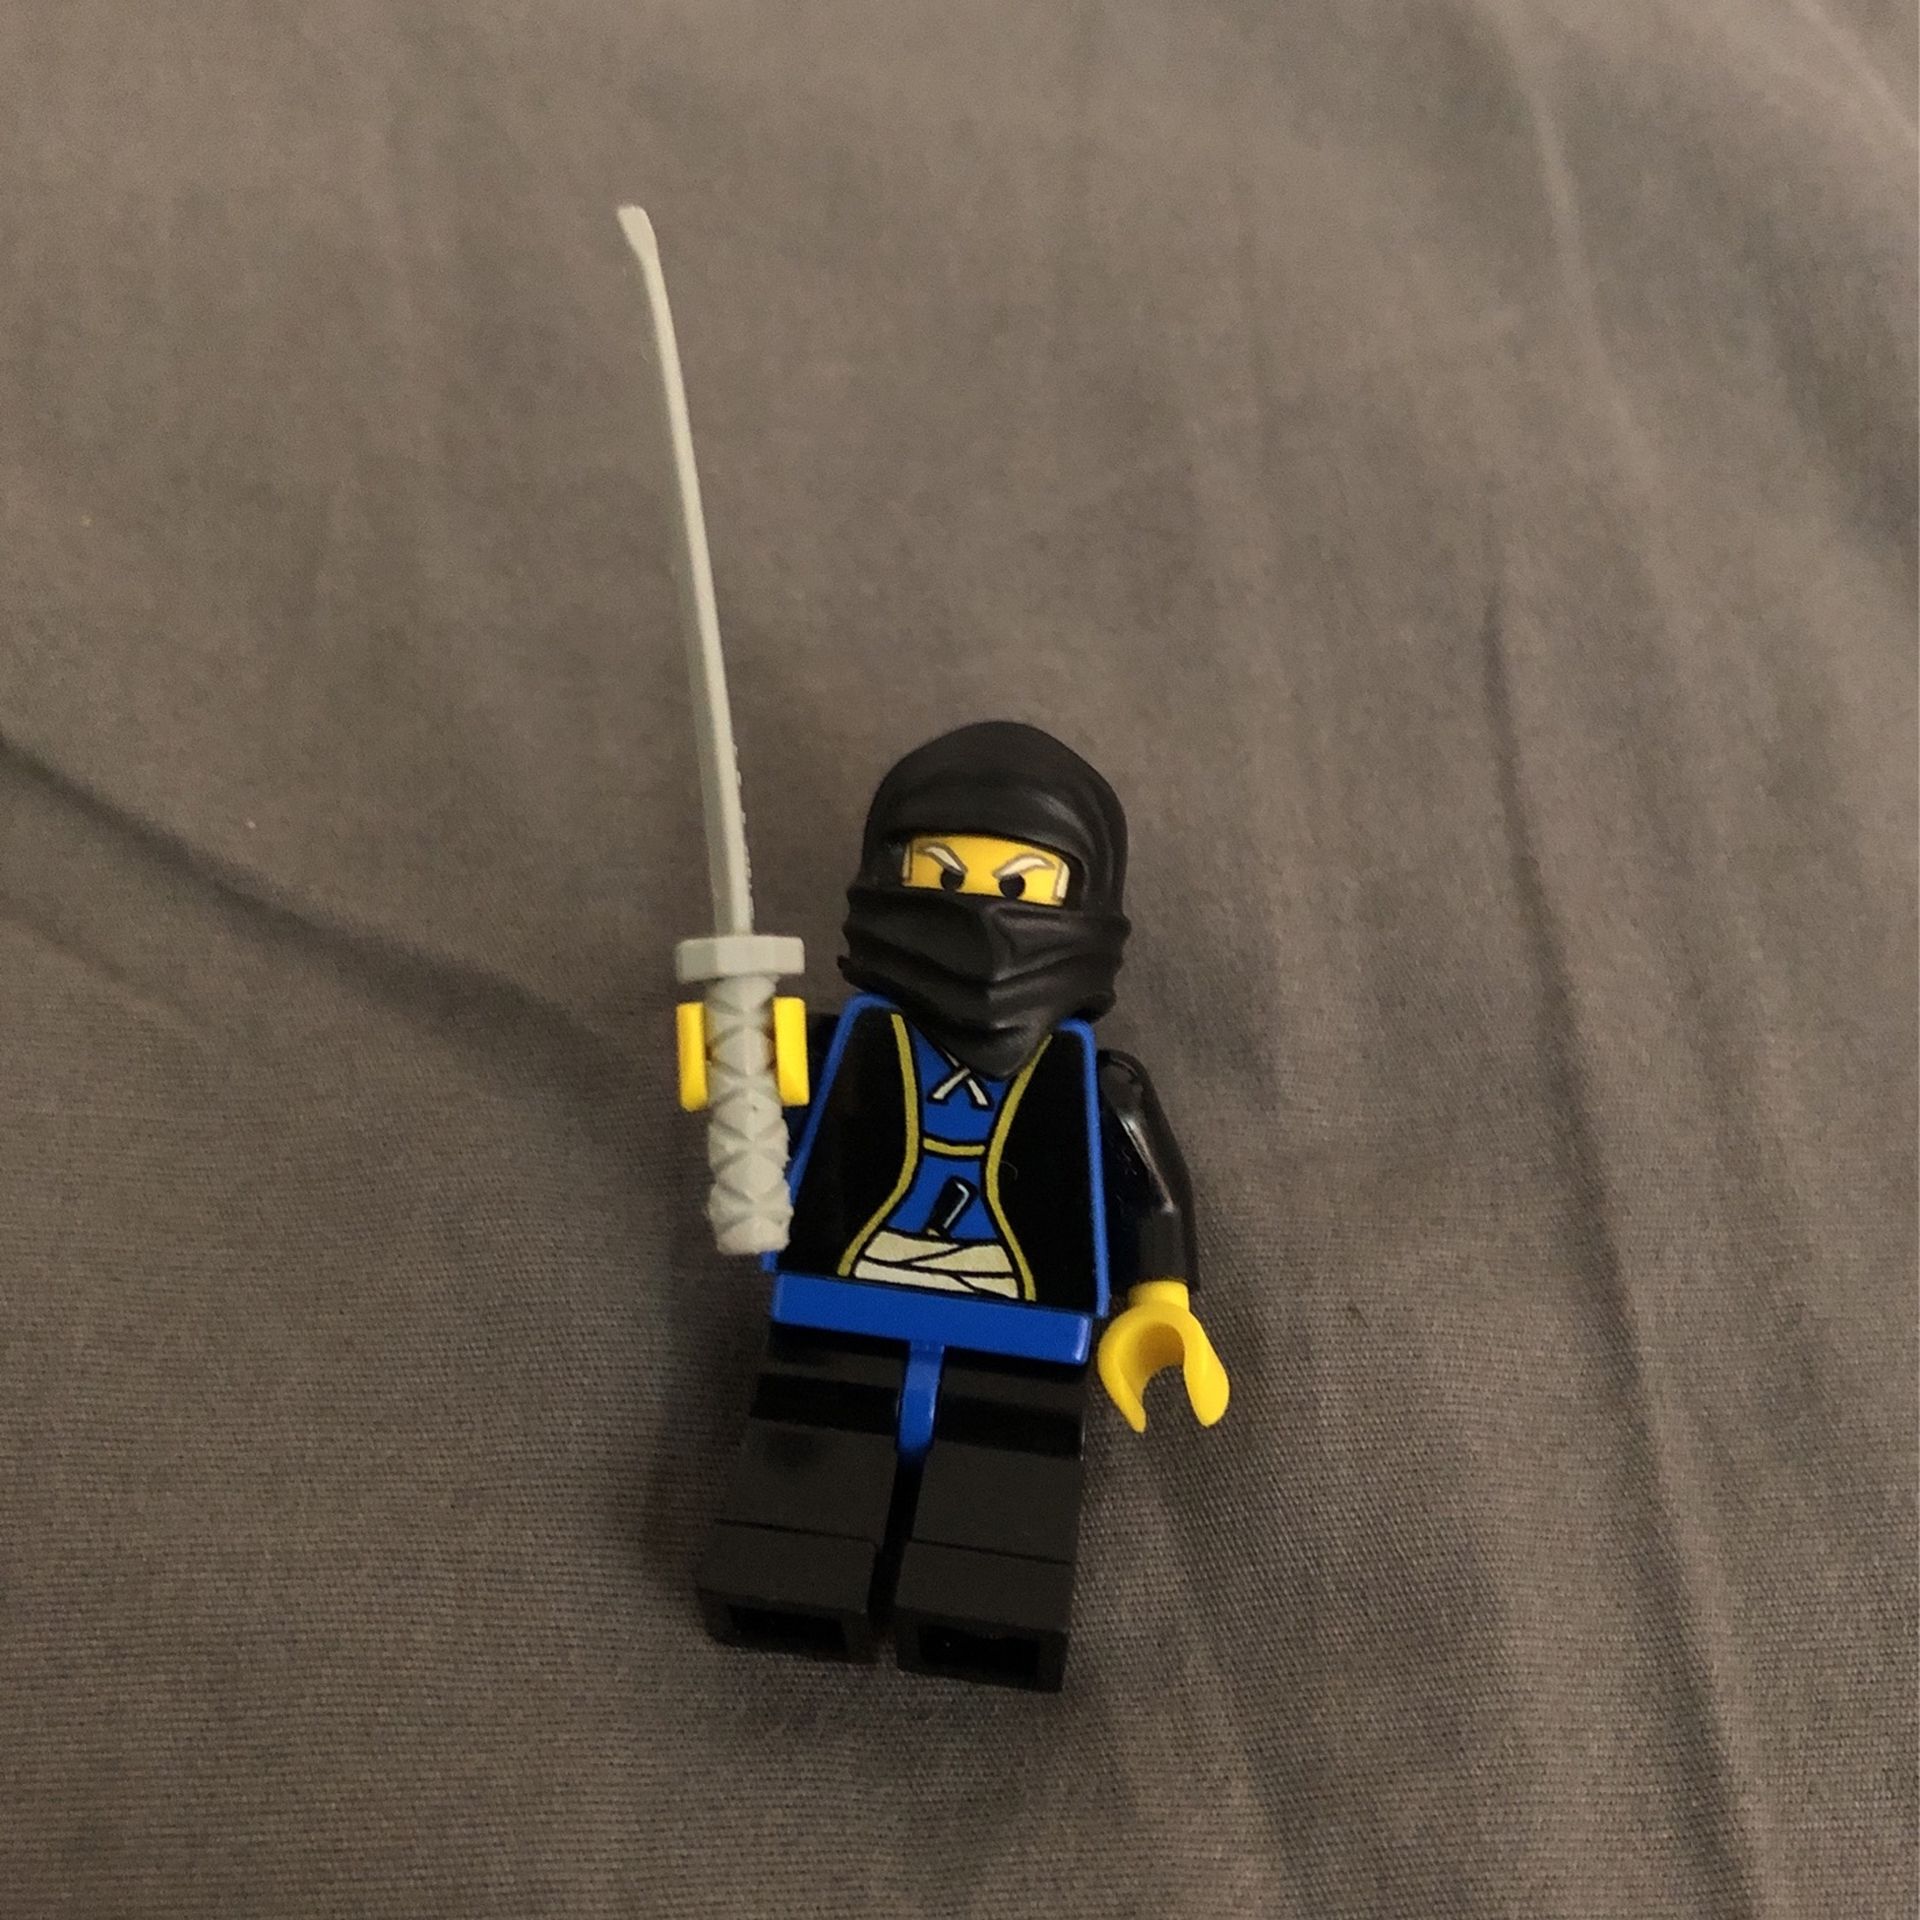 Lego Ninja Minifigure With Sword